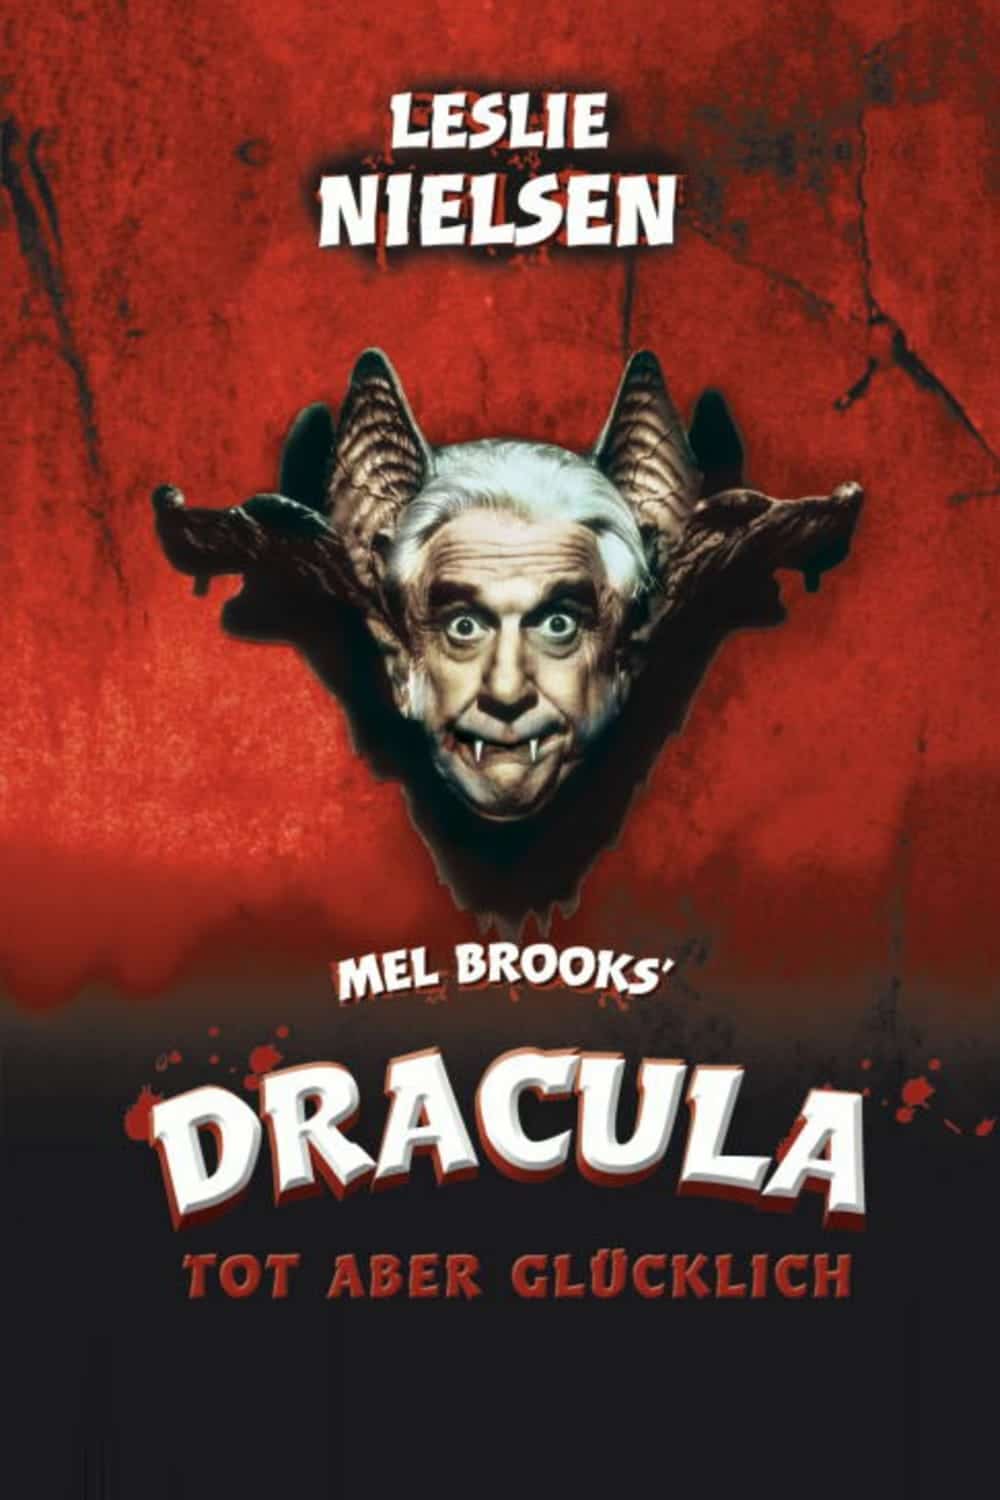 Plakat von "Dracula - Tot aber glücklich"